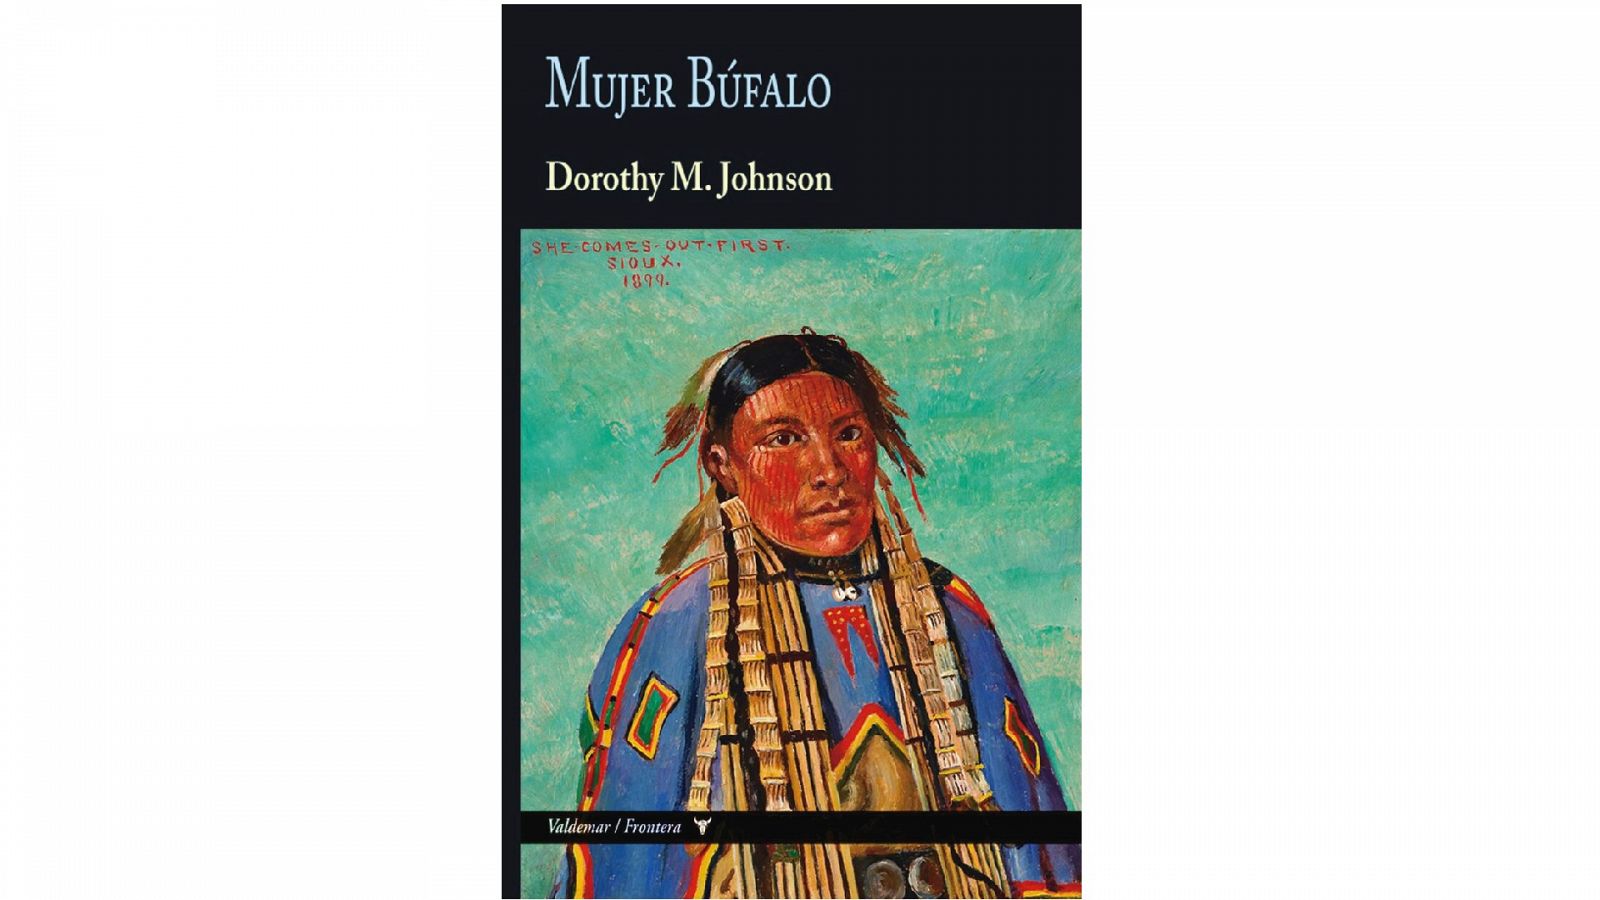 Novela Mujer Búfalo, de la escritora Dorothy M.Johnson, publicada por la editorial Valdemar en su colección Frontera.